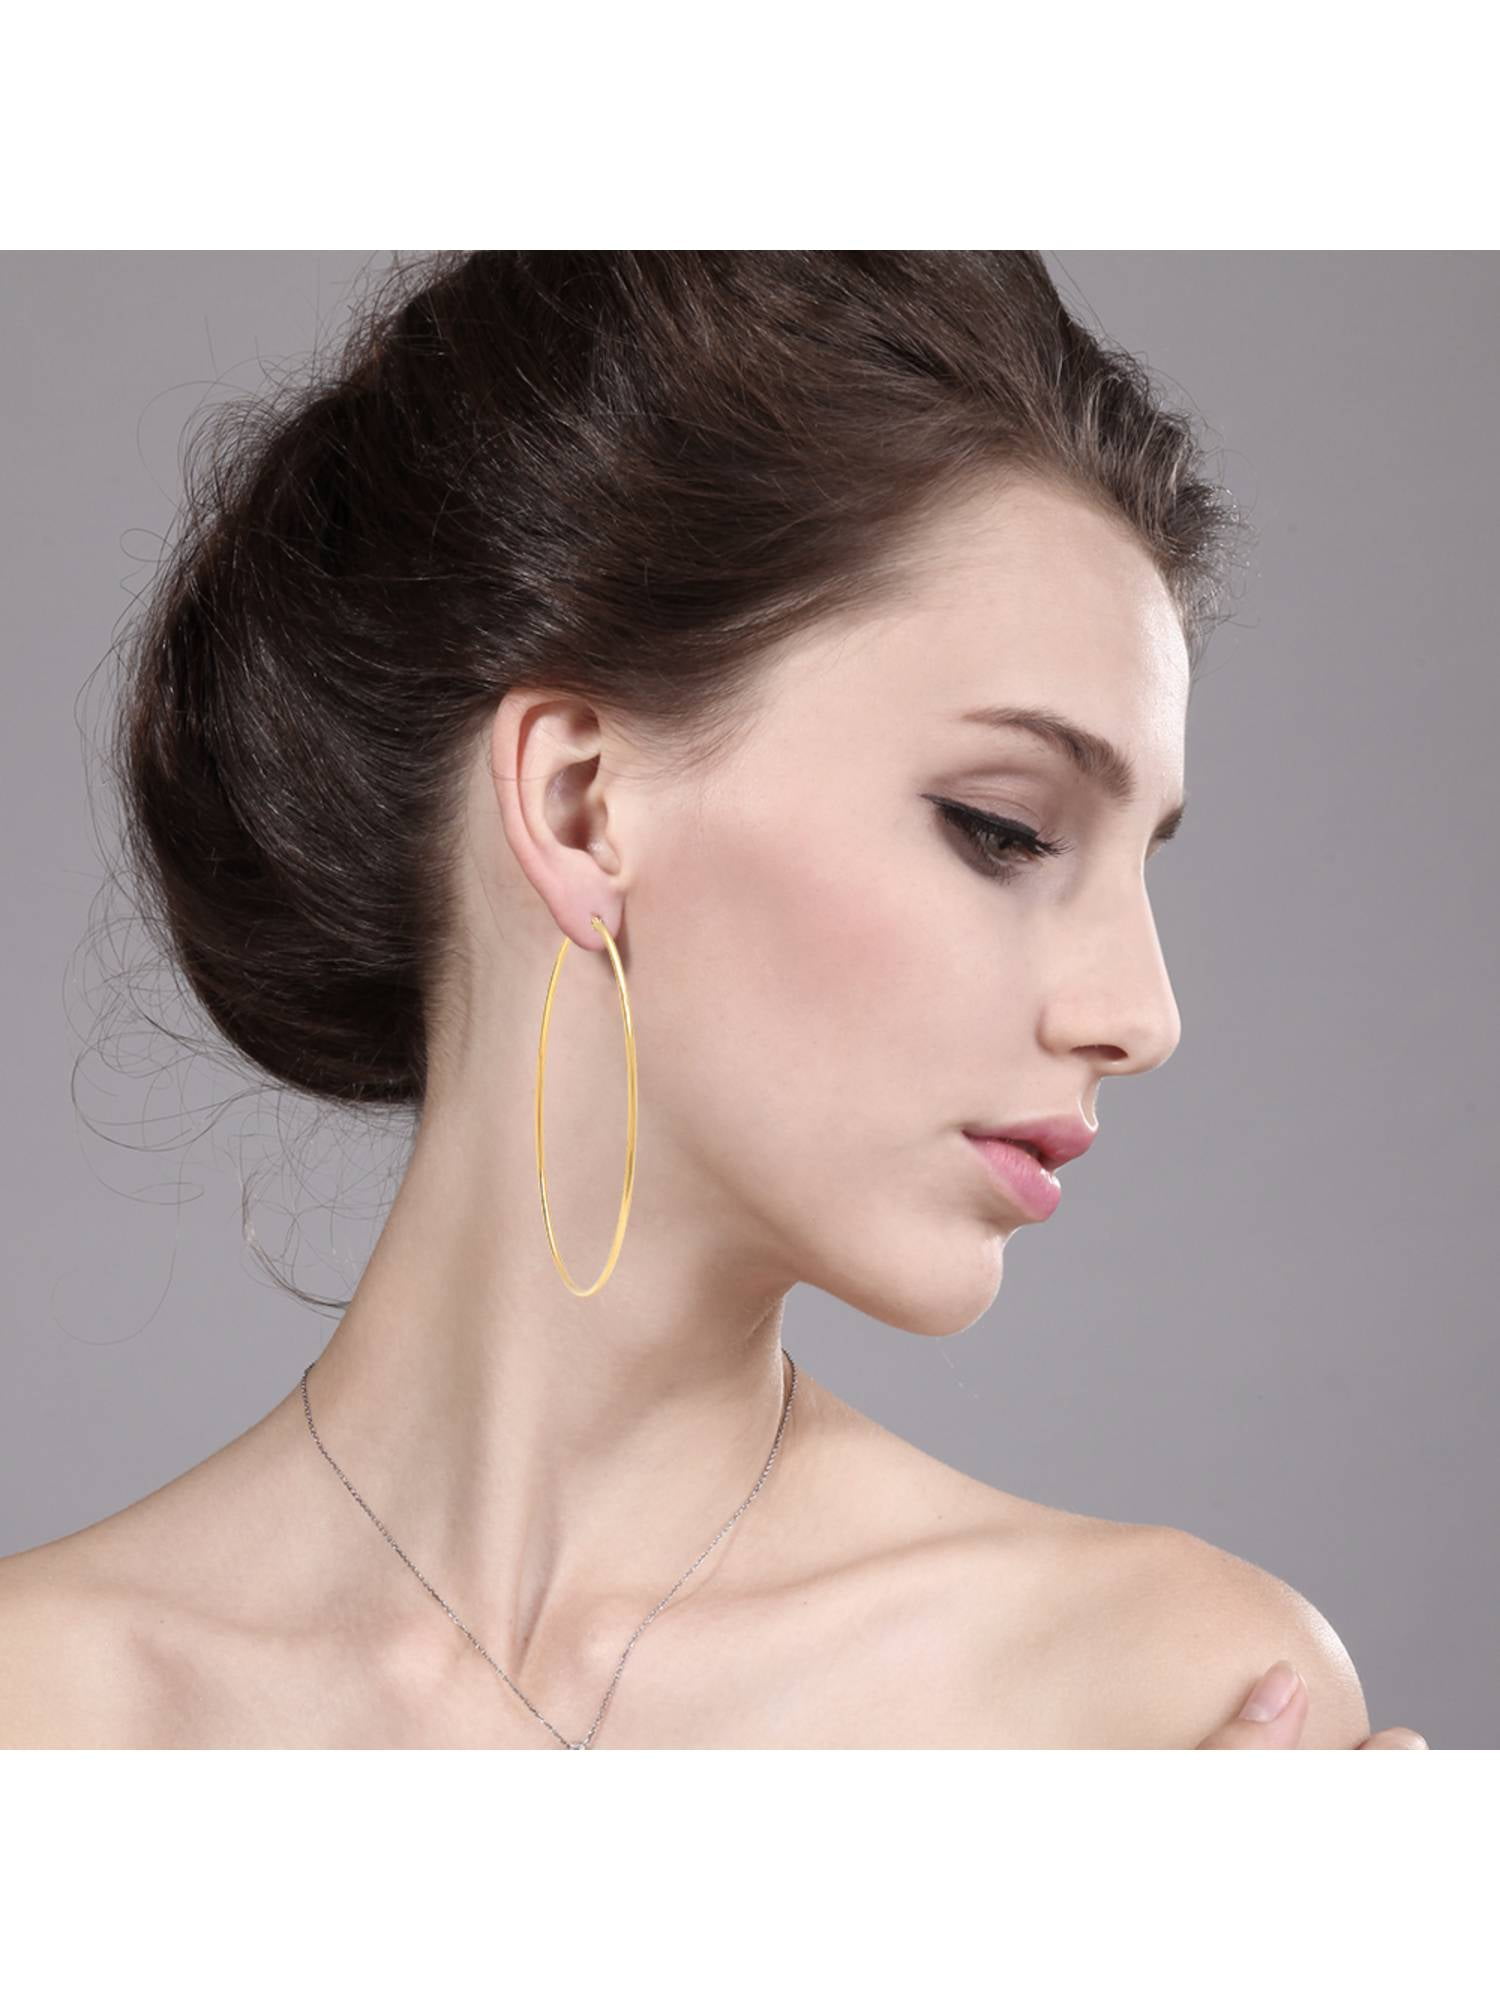 Aggregate more than 216 90mm hoop earrings